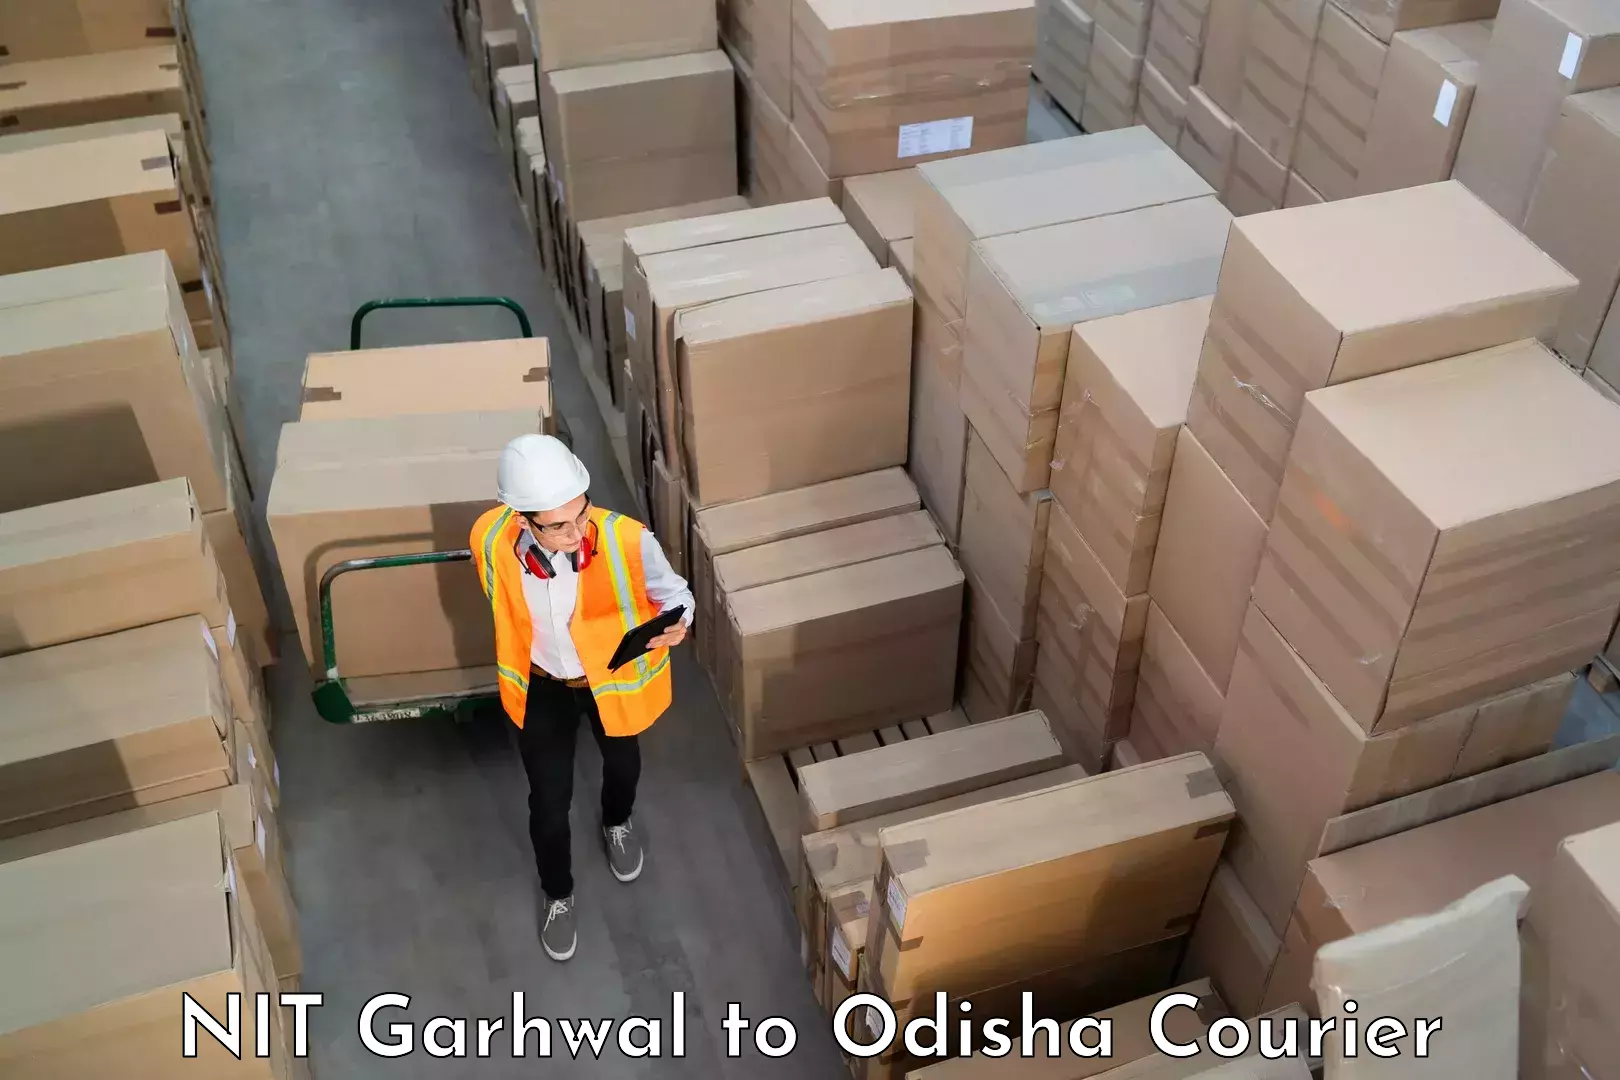 Luggage dispatch service NIT Garhwal to Bhubaneswar